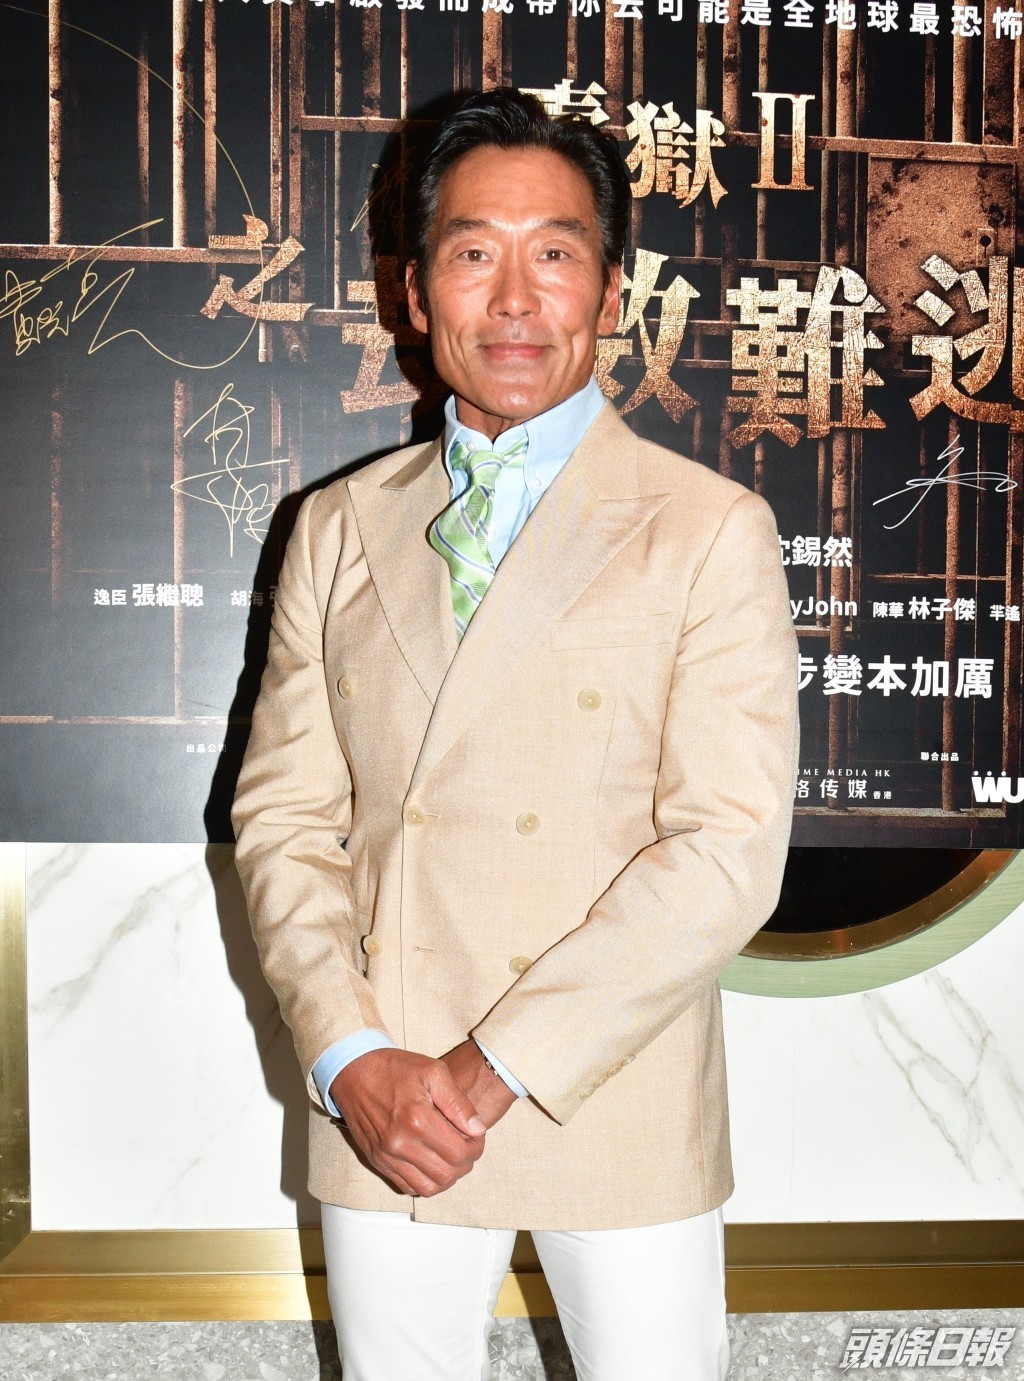 鄭浩南9月中出席電影《壹獄II 劫數難逃》煞科宴時自爆20年婚姻現危機。